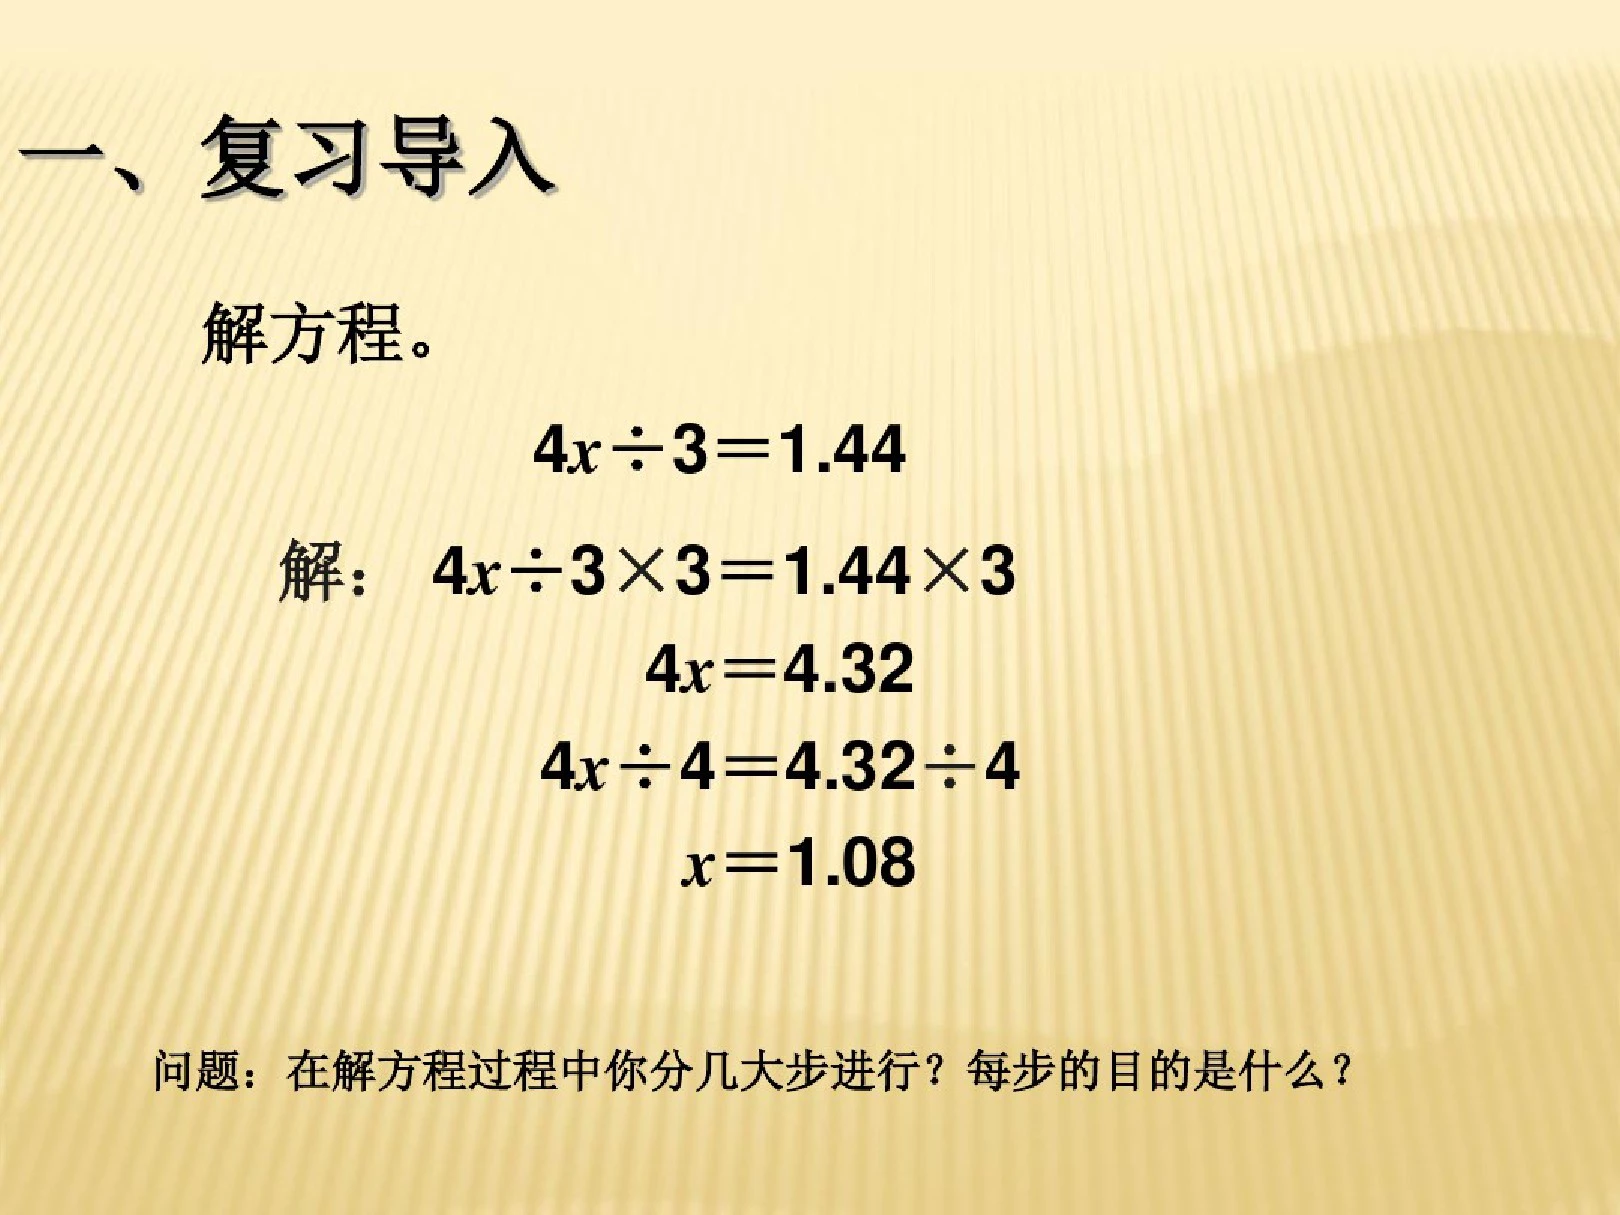 新人教版五年级上册【数学】PPT课件第五单元《解简易方程》解方程例5